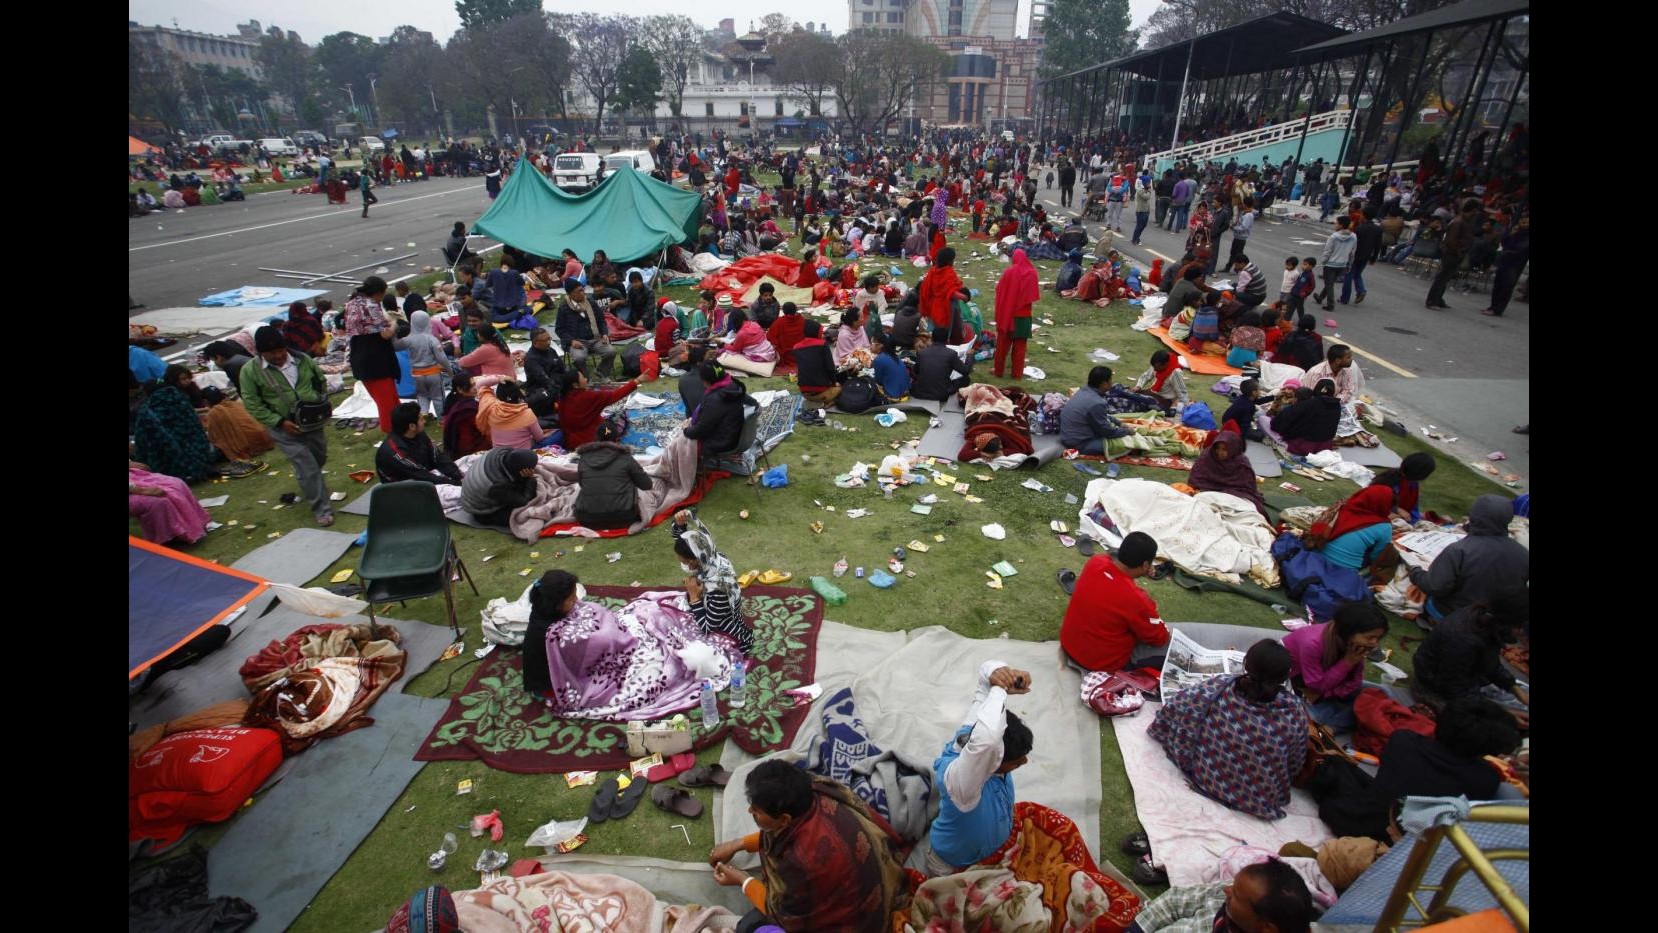 Sisma Nepal, oltre 3.300 morti. Nuova notte all’aperto e la pioggia complica le cose